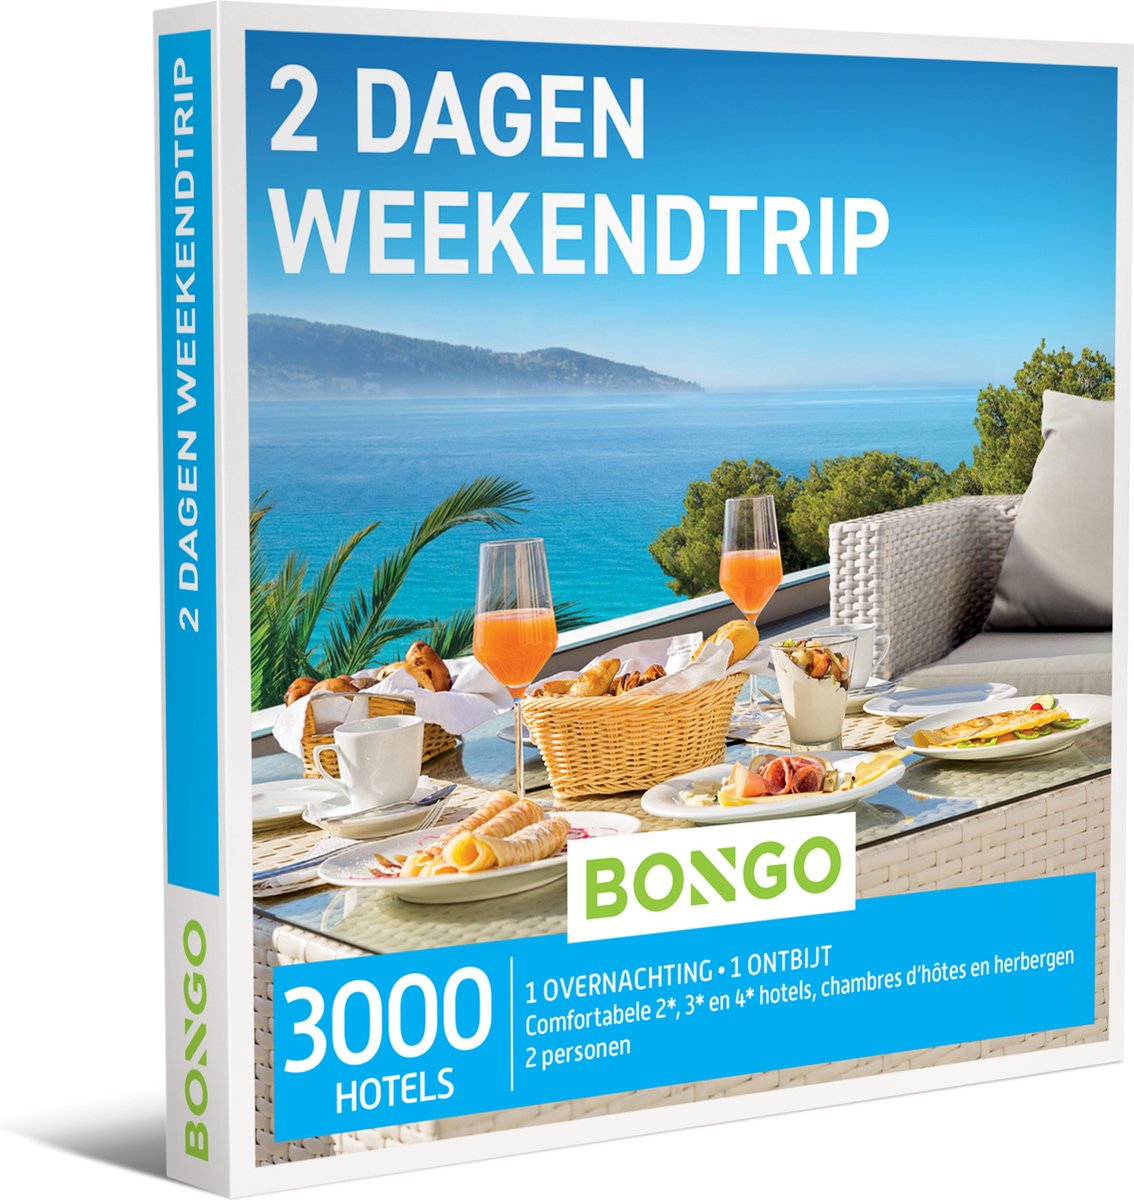 Bongo Bon - 2 Dagen Weekendtrip Cadeaubon - Cadeaukaart cadeau voor man of vrouw | 3600 adressen, waaronder hotels tot 4*, chambres d'hôtes en herbergen - Bongo